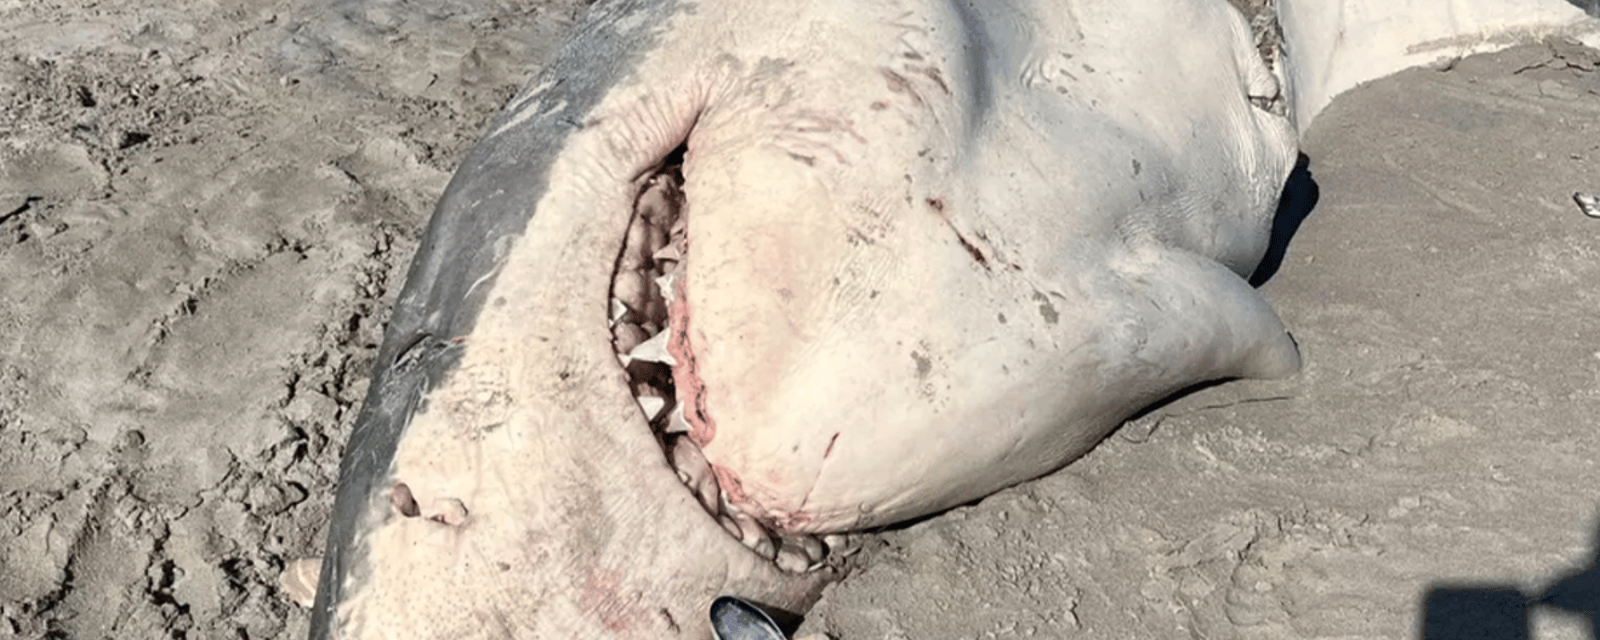 Des baigneurs choqués après avoir découvert un grand requin blanc à moitié mangé sur la plage